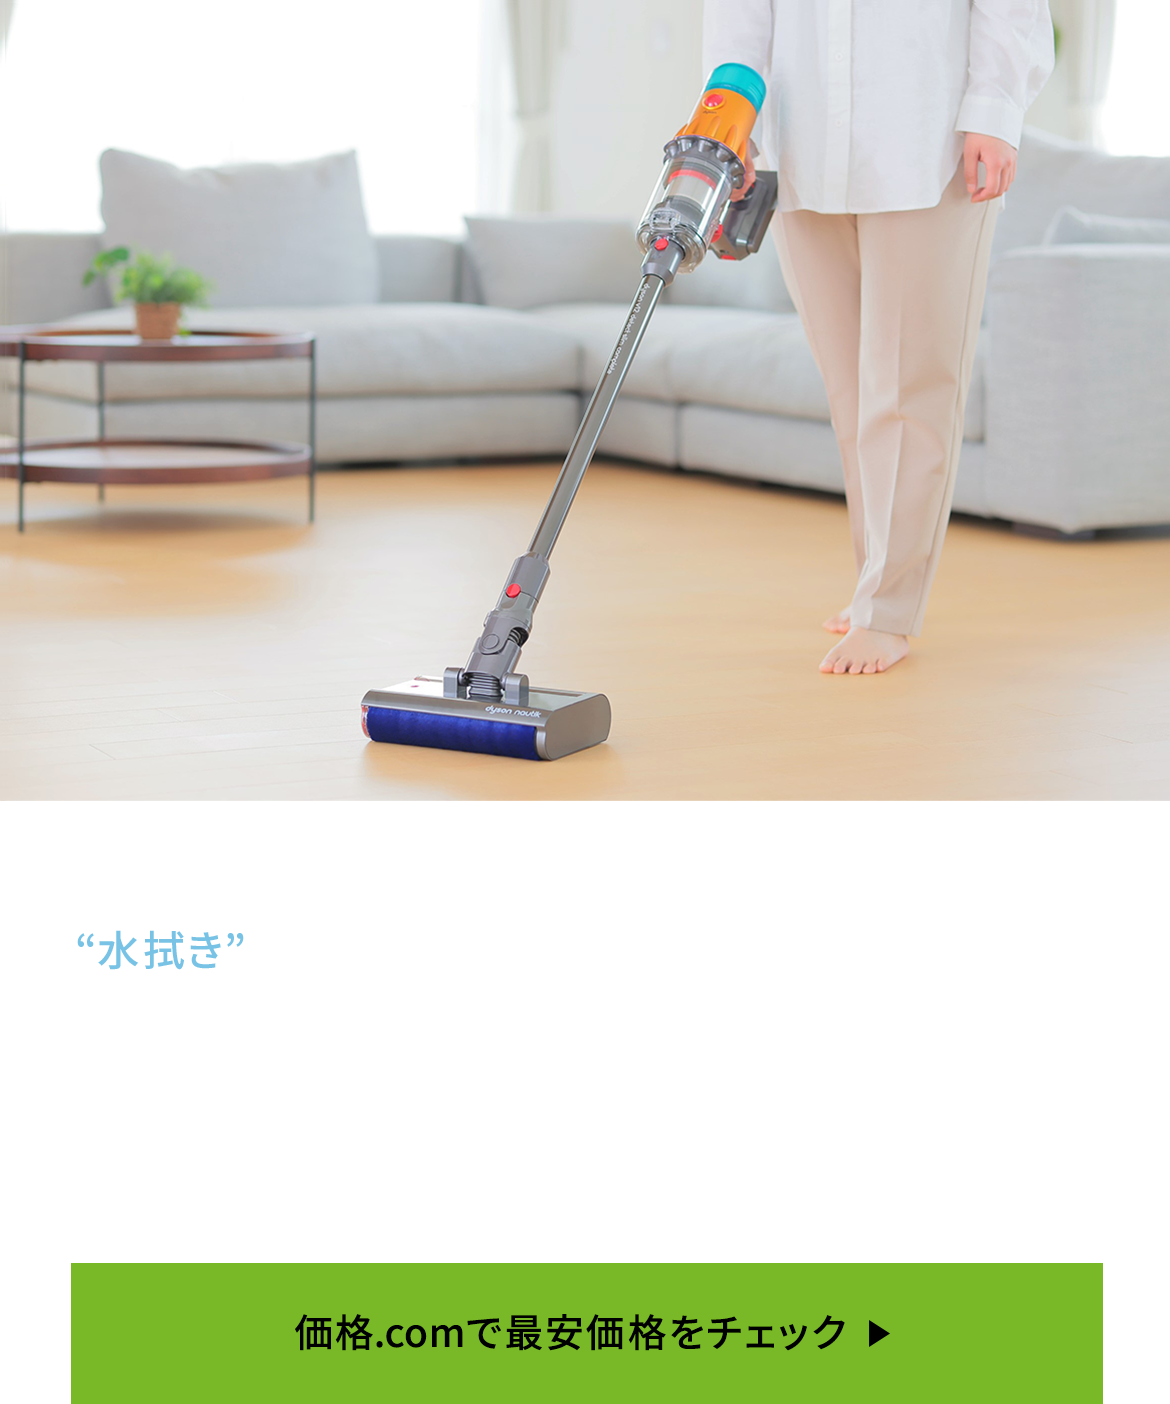 価格.com - [PR企画]「Dyson V12s Detect Slim Submarine」レビュー